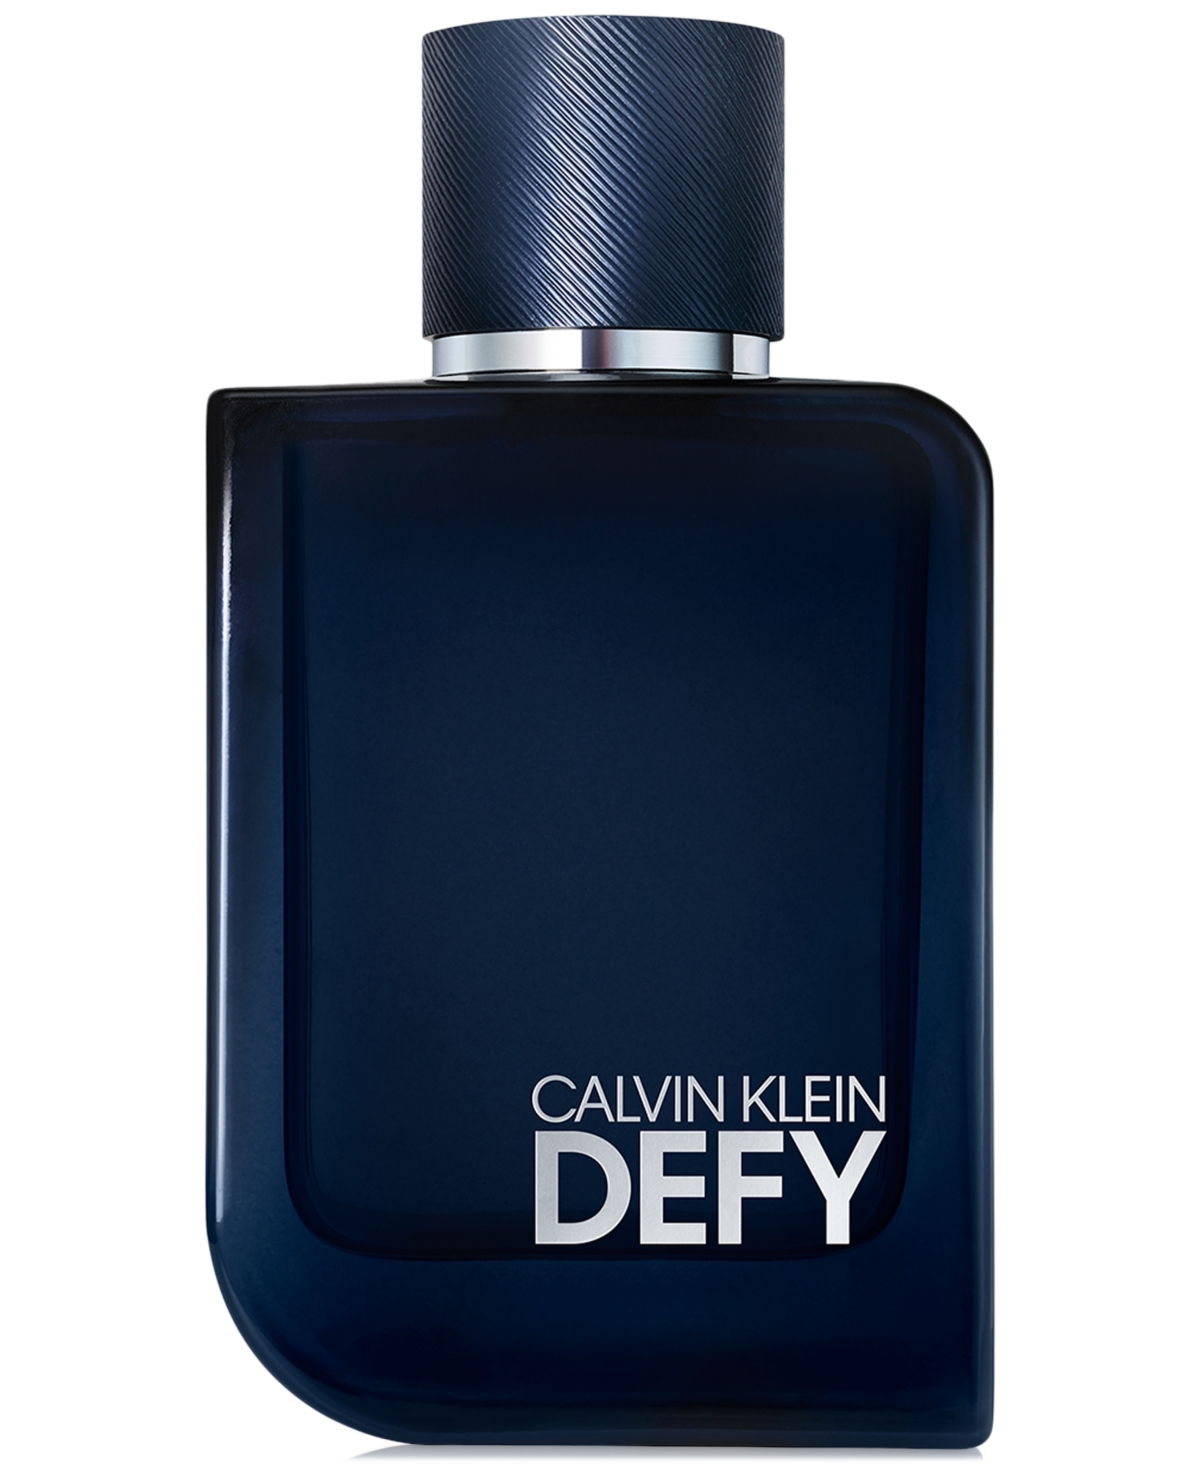 Men's Defy Parfum Spray, 3.3 oz., Created for Macy's